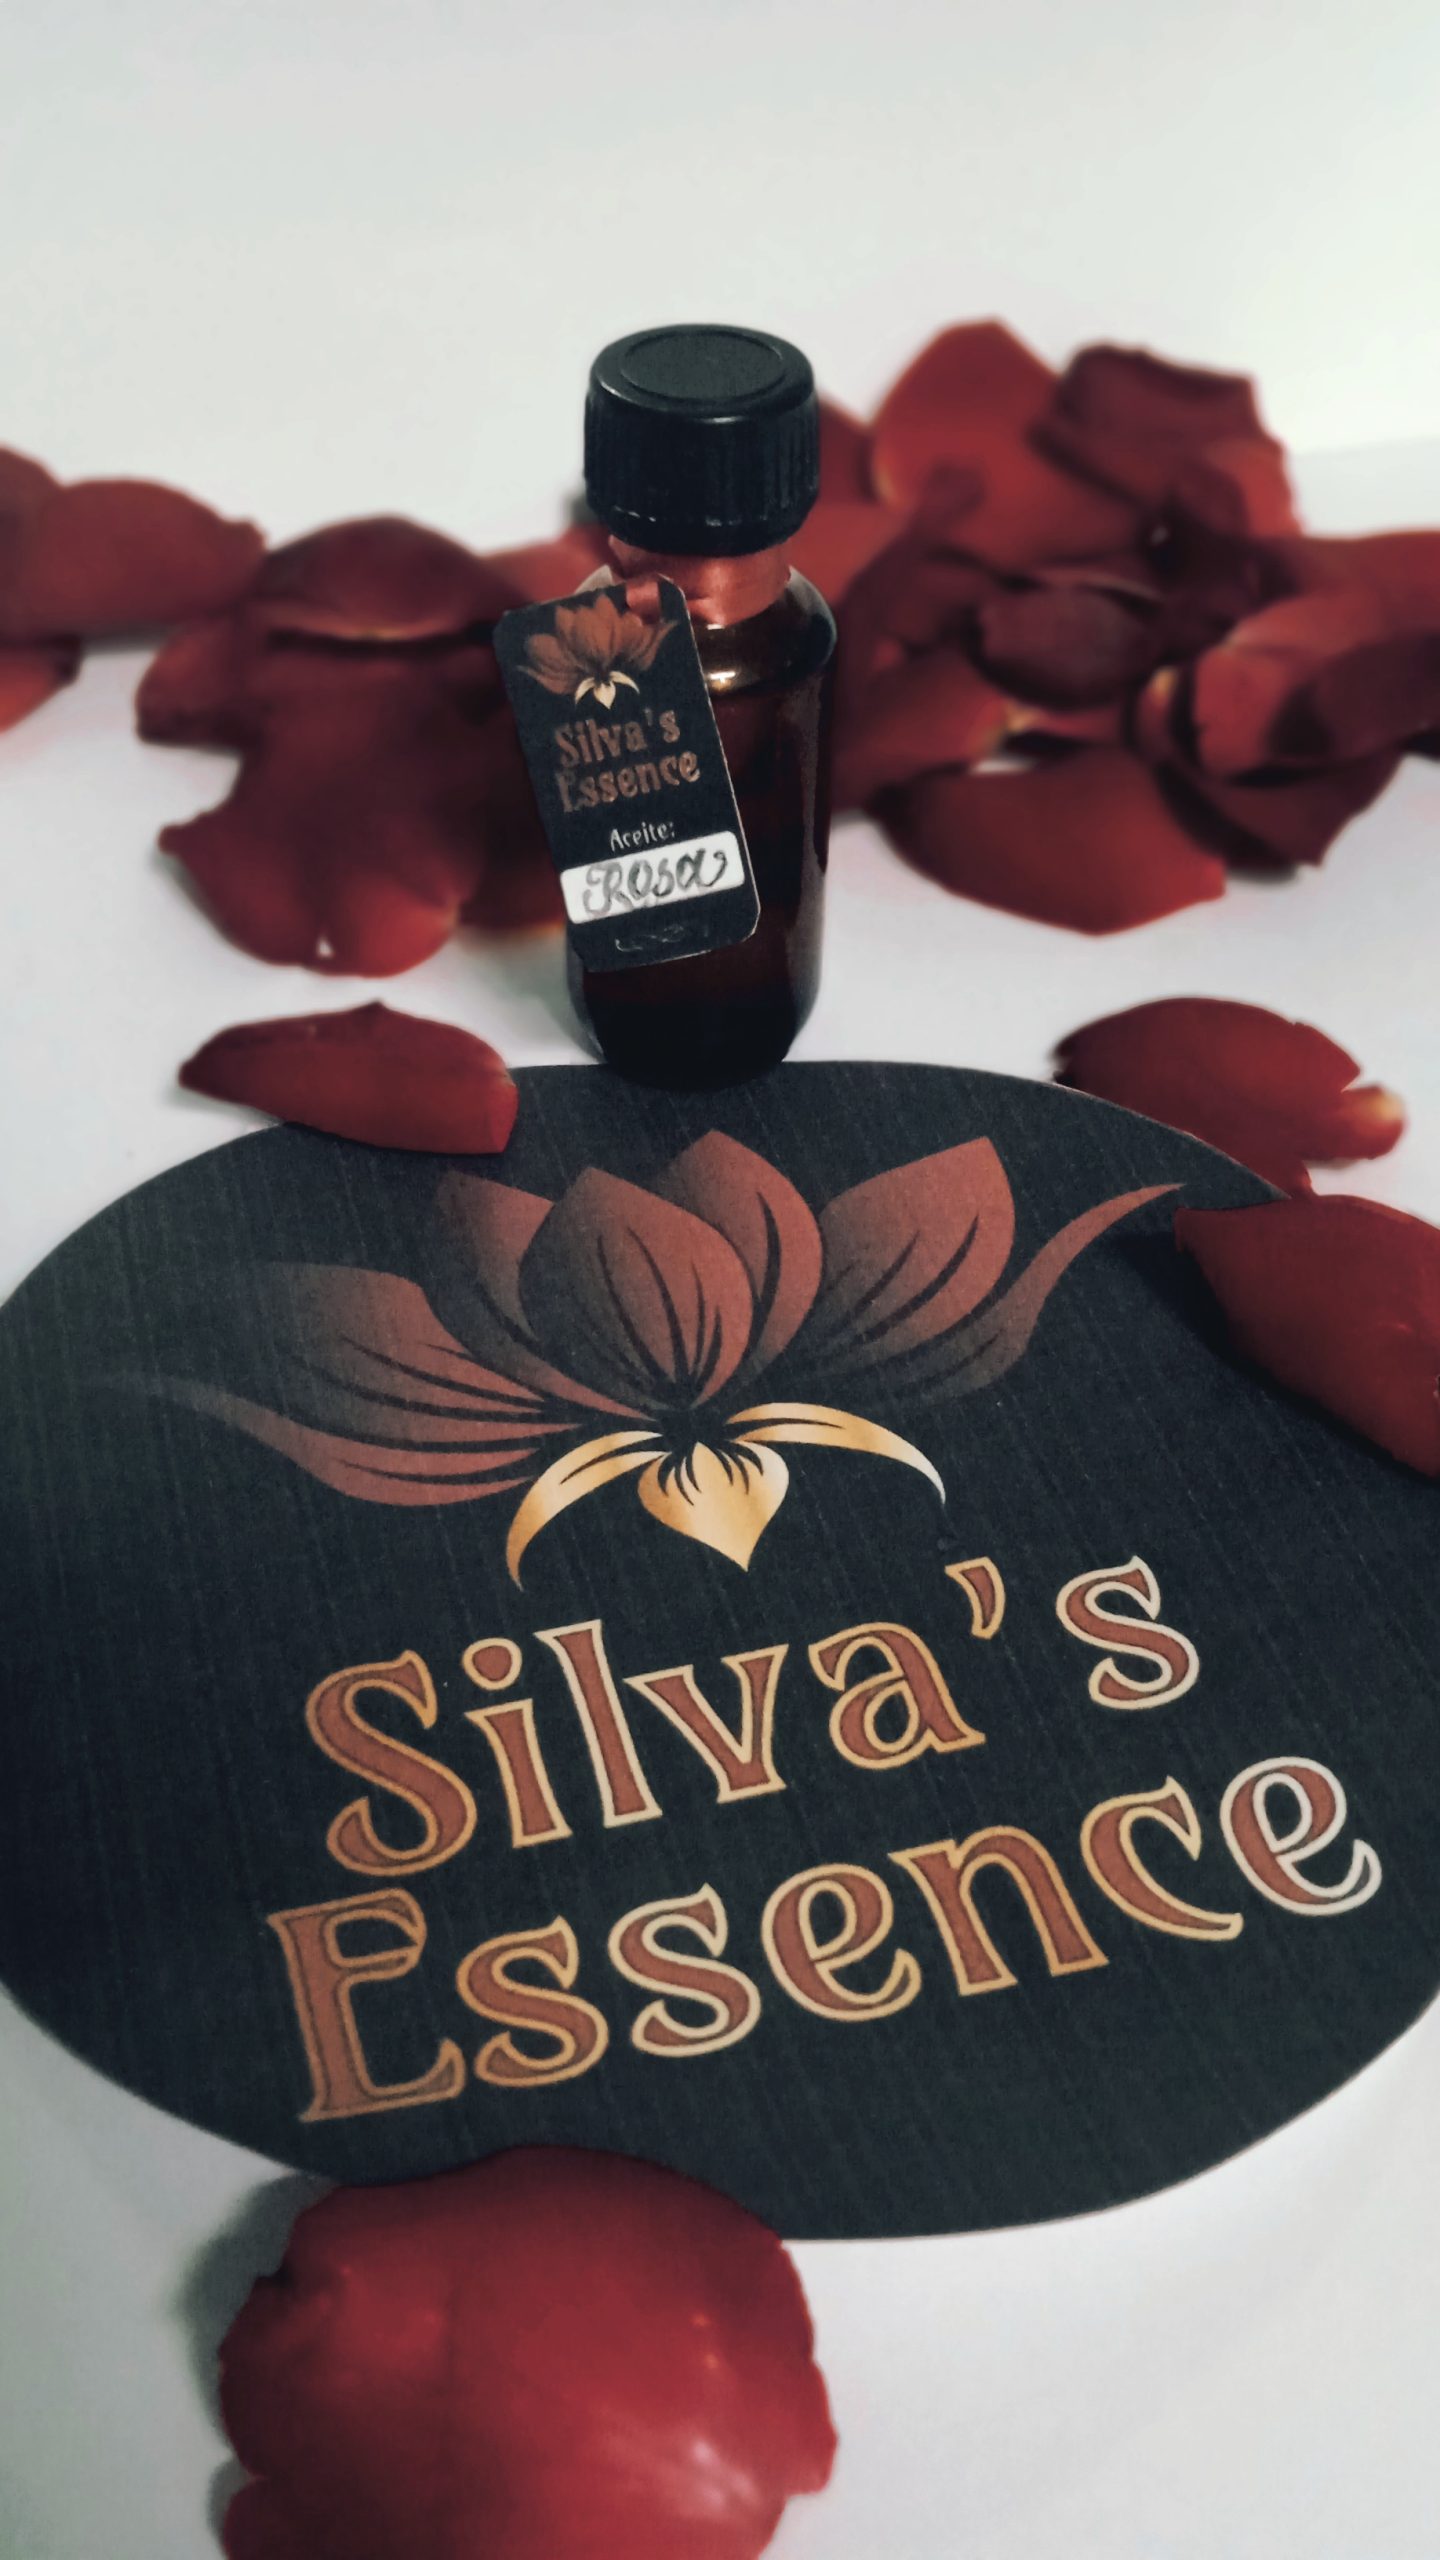 Silva's Essence